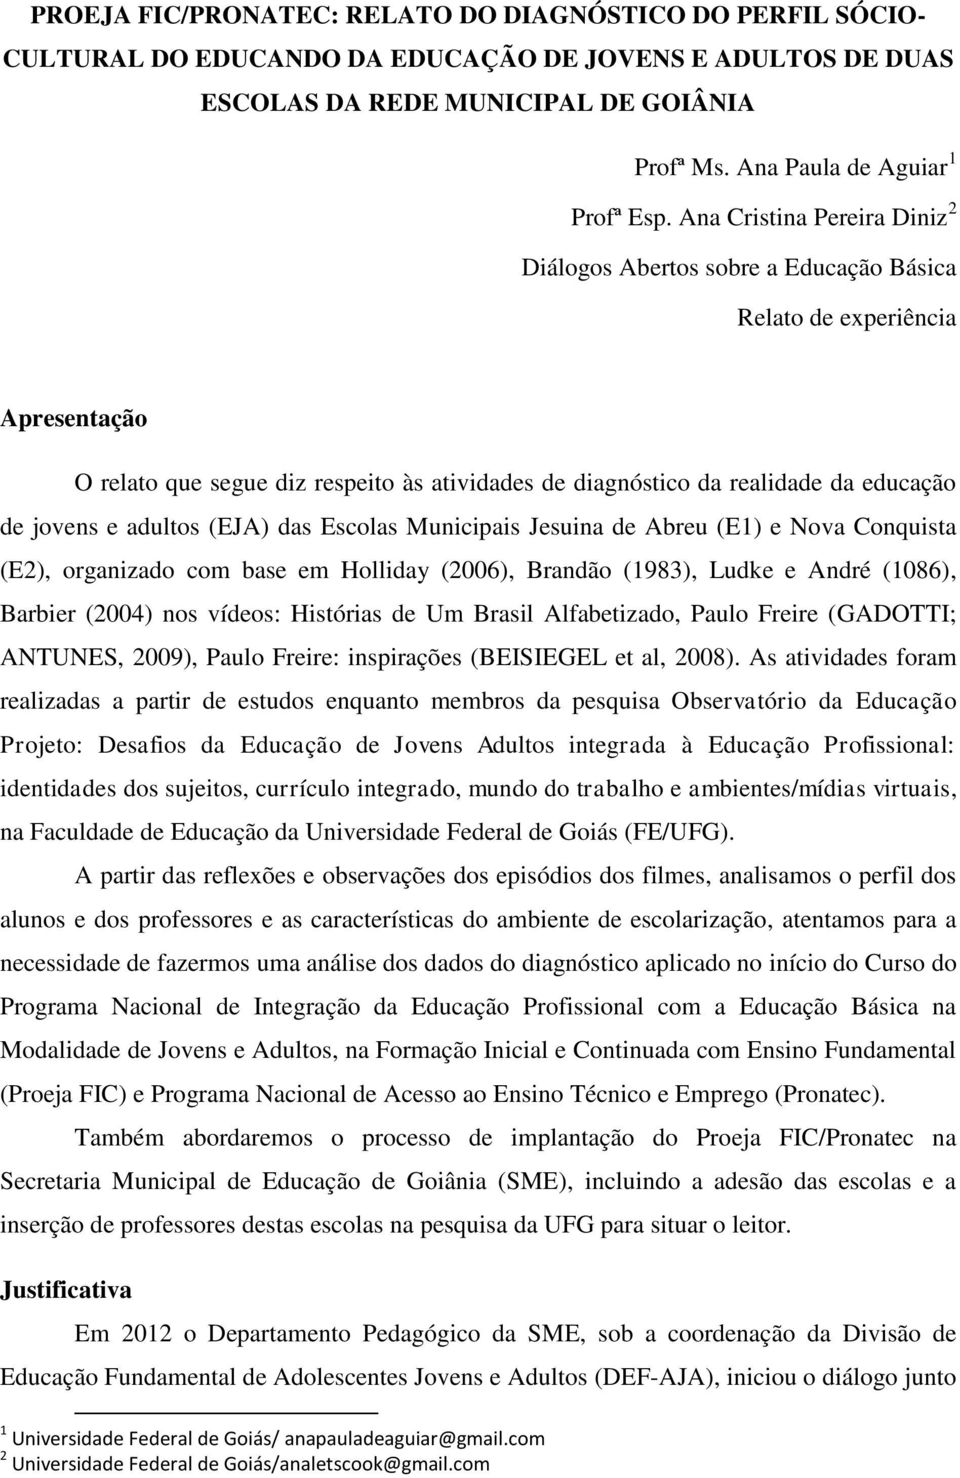 jovens e adultos (EJA) das Escolas Municipais Jesuina de Abreu (E1) e Nova Conquista (E2), organizado com base em Holliday (2006), Brandão (1983), Ludke e André (1086), Barbier (2004) nos vídeos: